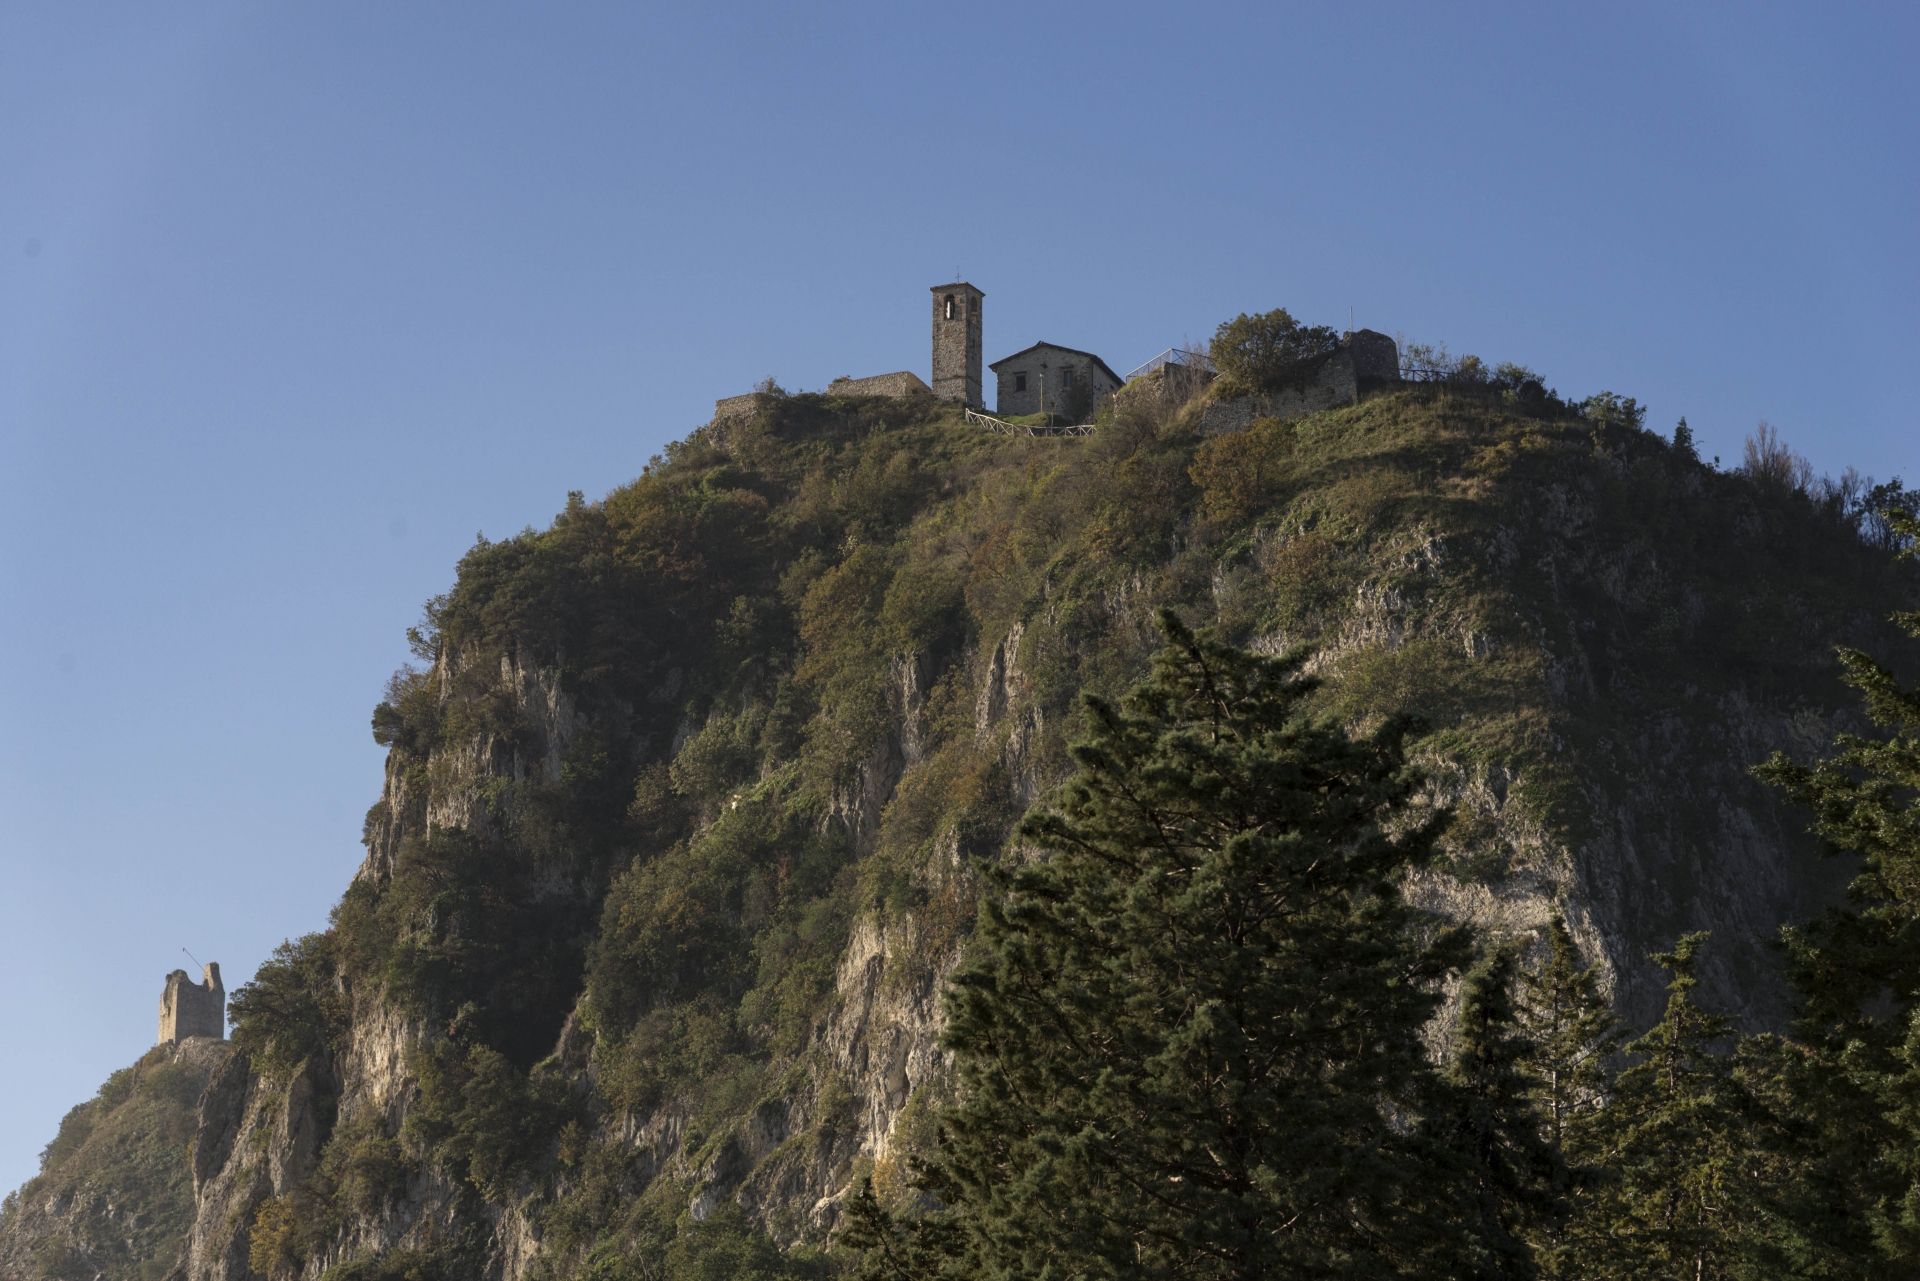 Poggio Torriana | Valmarecchia | Torre photo by Riccardo Gallini